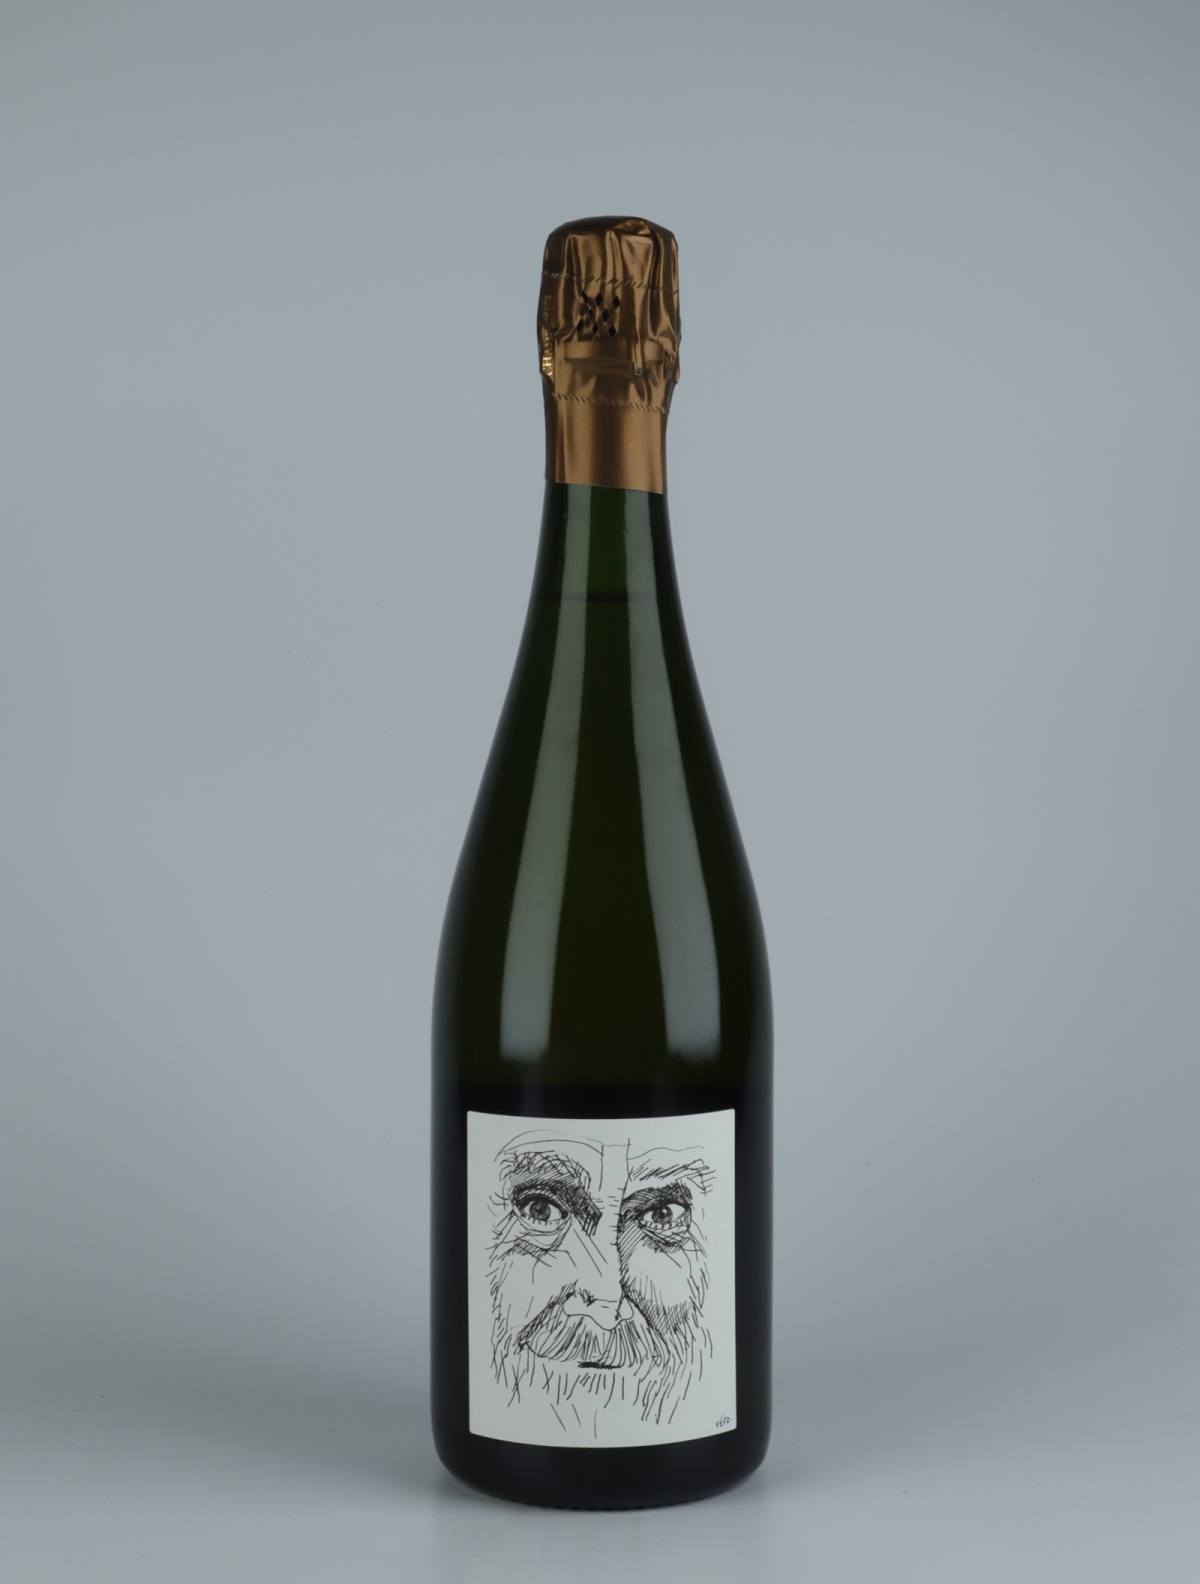 A bottle 2016 Héraclite Sous Bois - Brut Nature Sparkling from Stroebel, Champagne in France